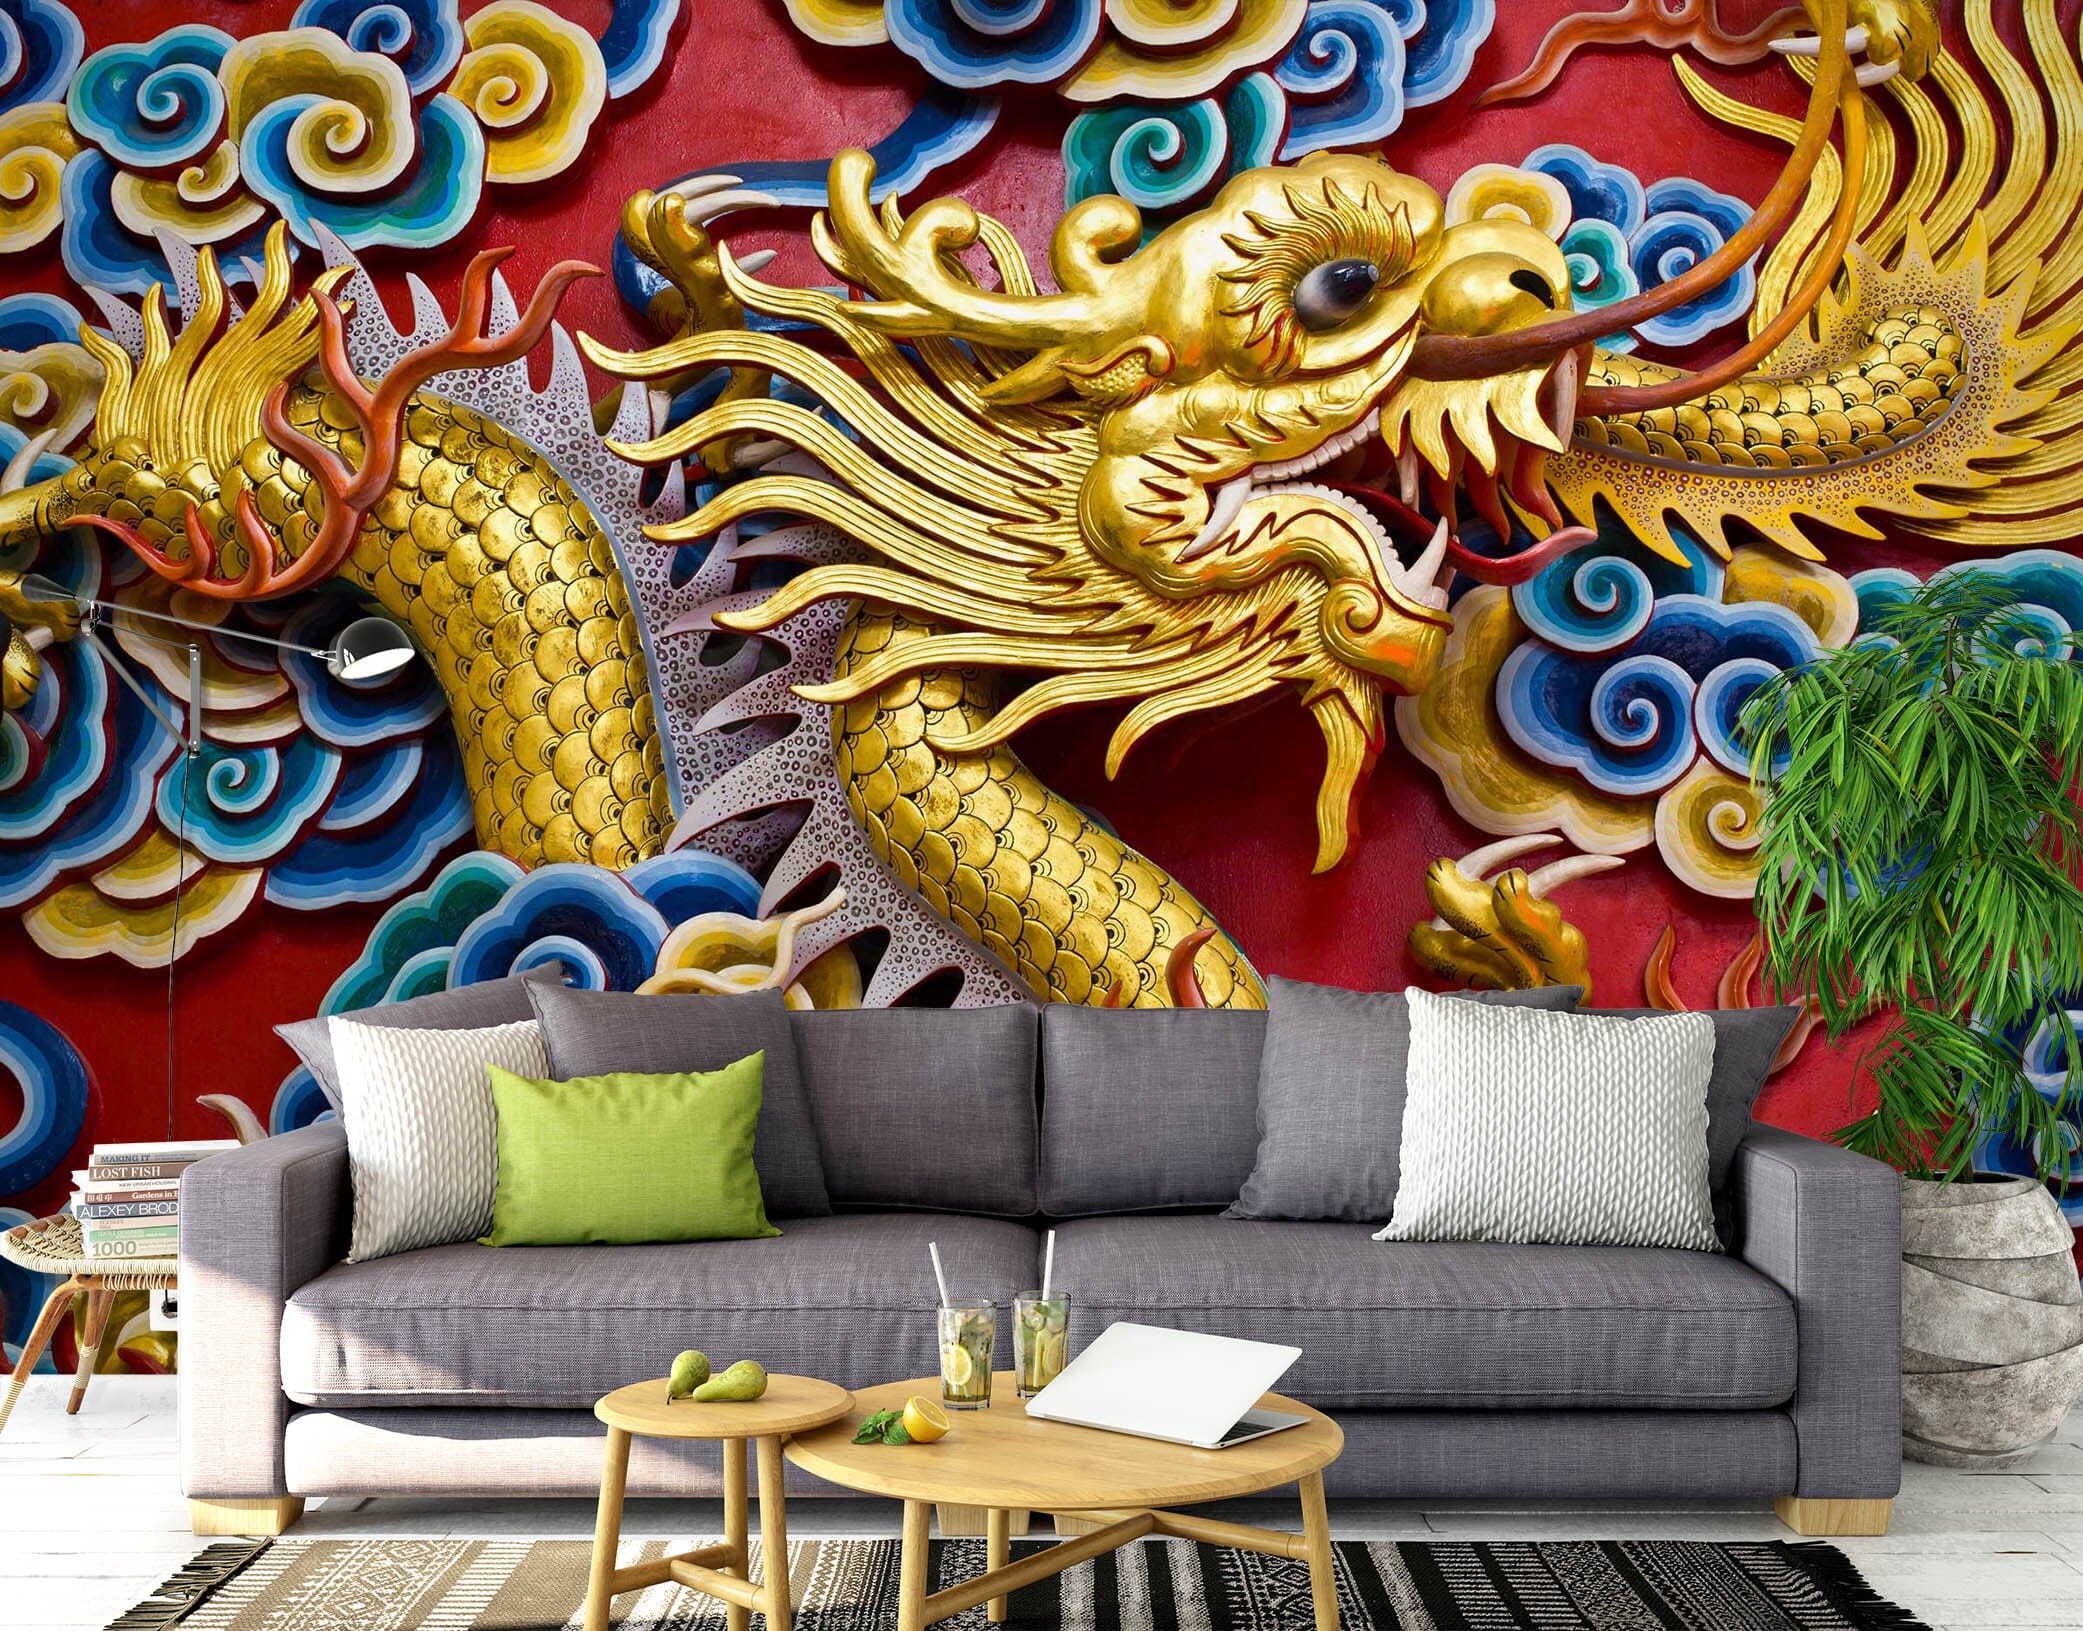 3D Golden Dragon Carving 1524 Wall Murals Wallpaper AJ Wallpaper 2 